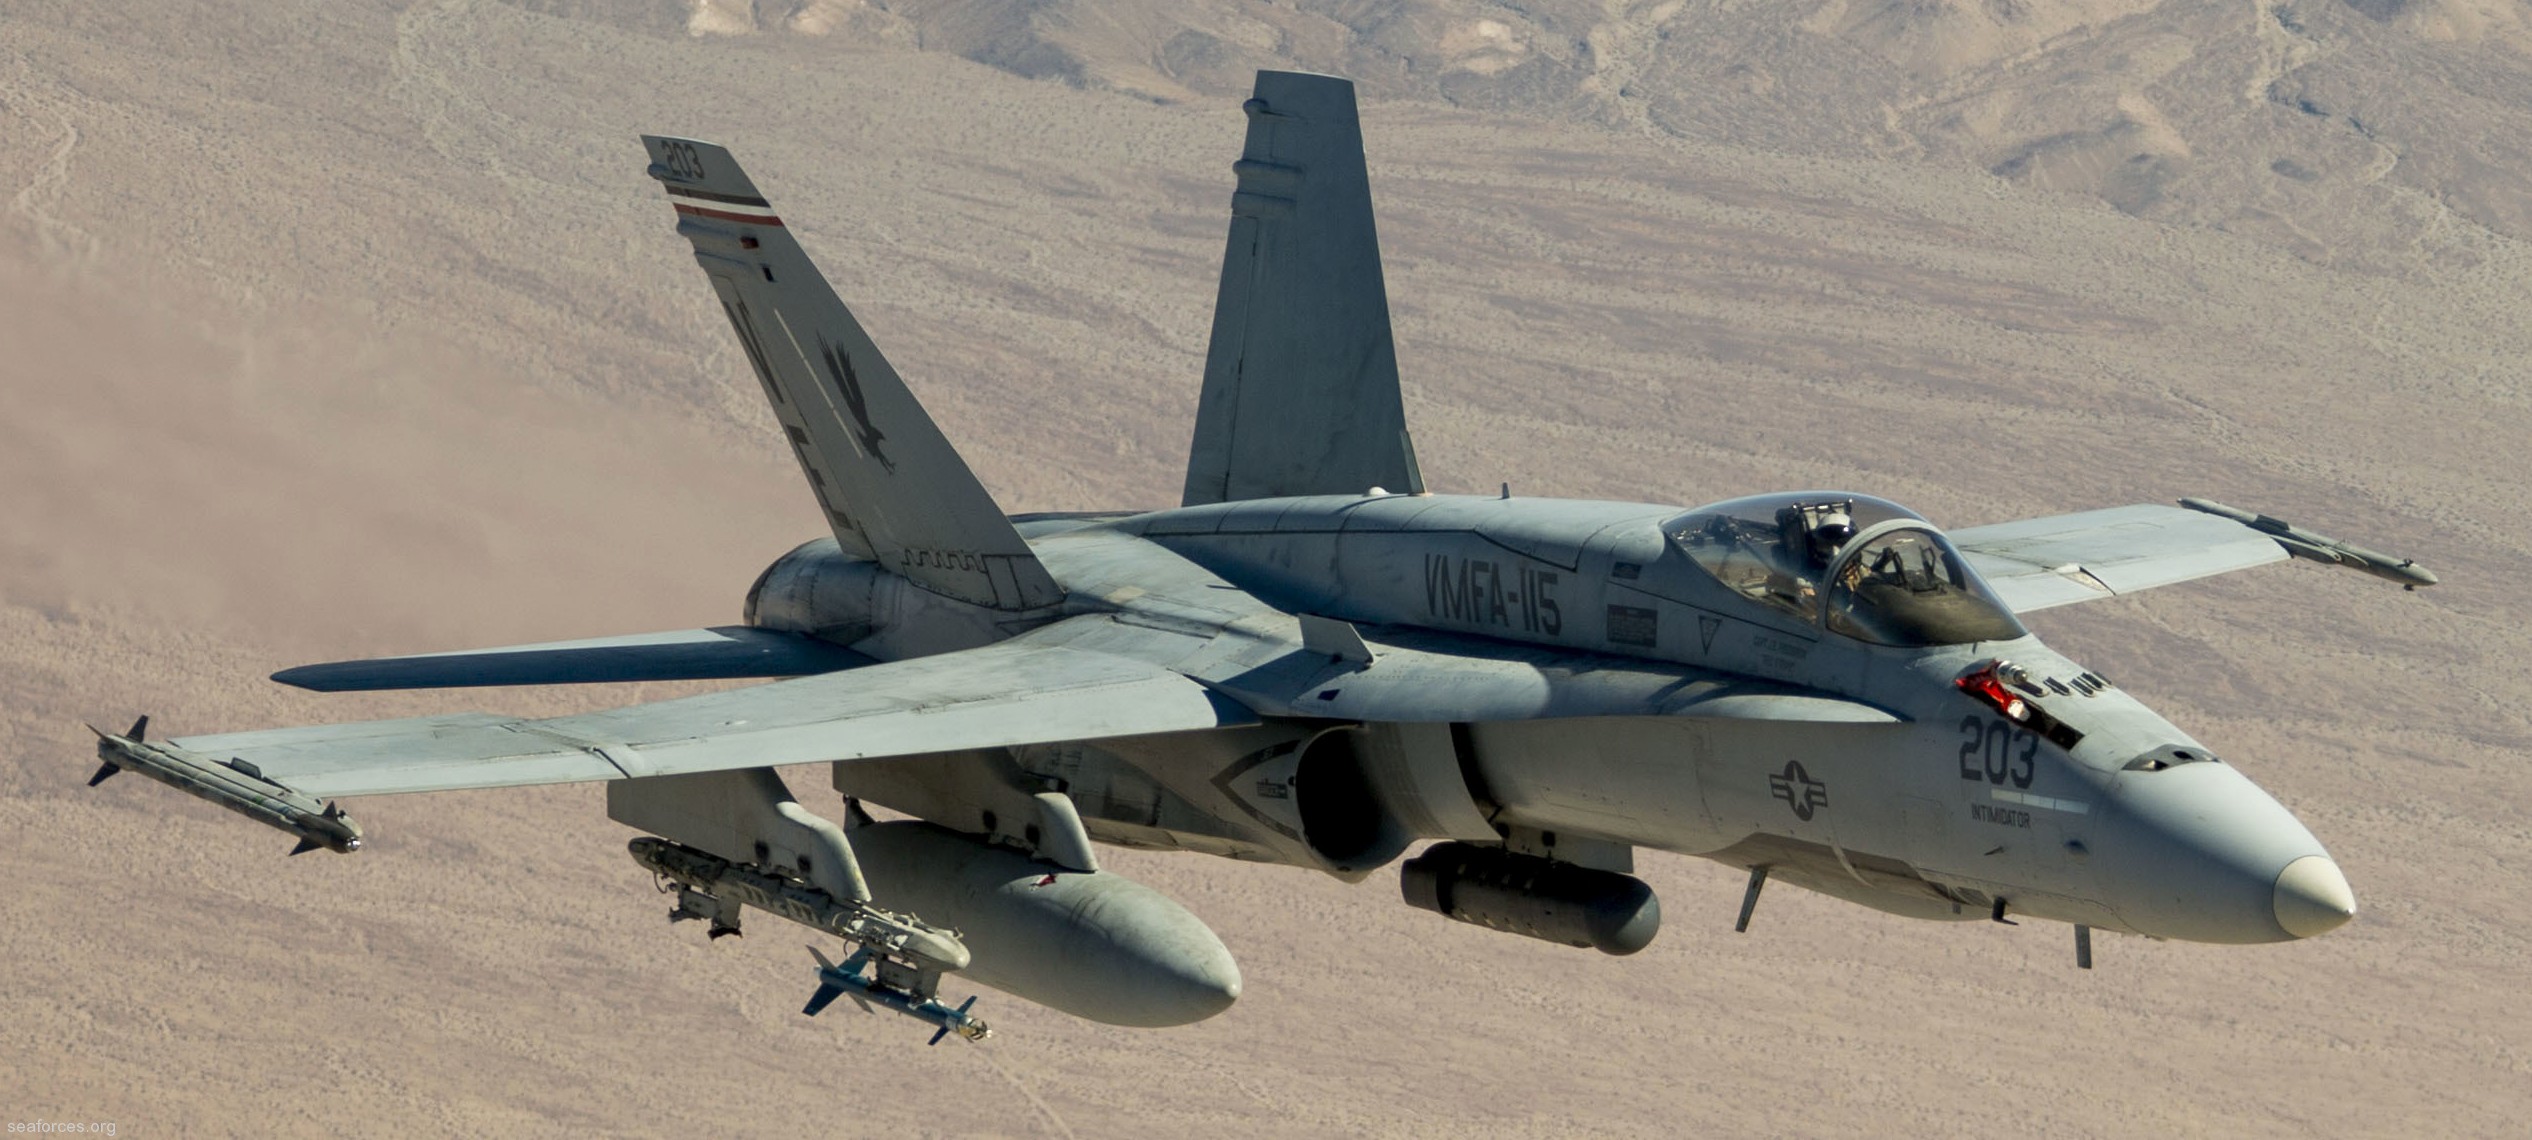 vmfa-115 silver eagles marine fighter attack squadron f/a-18a+ hornet 92